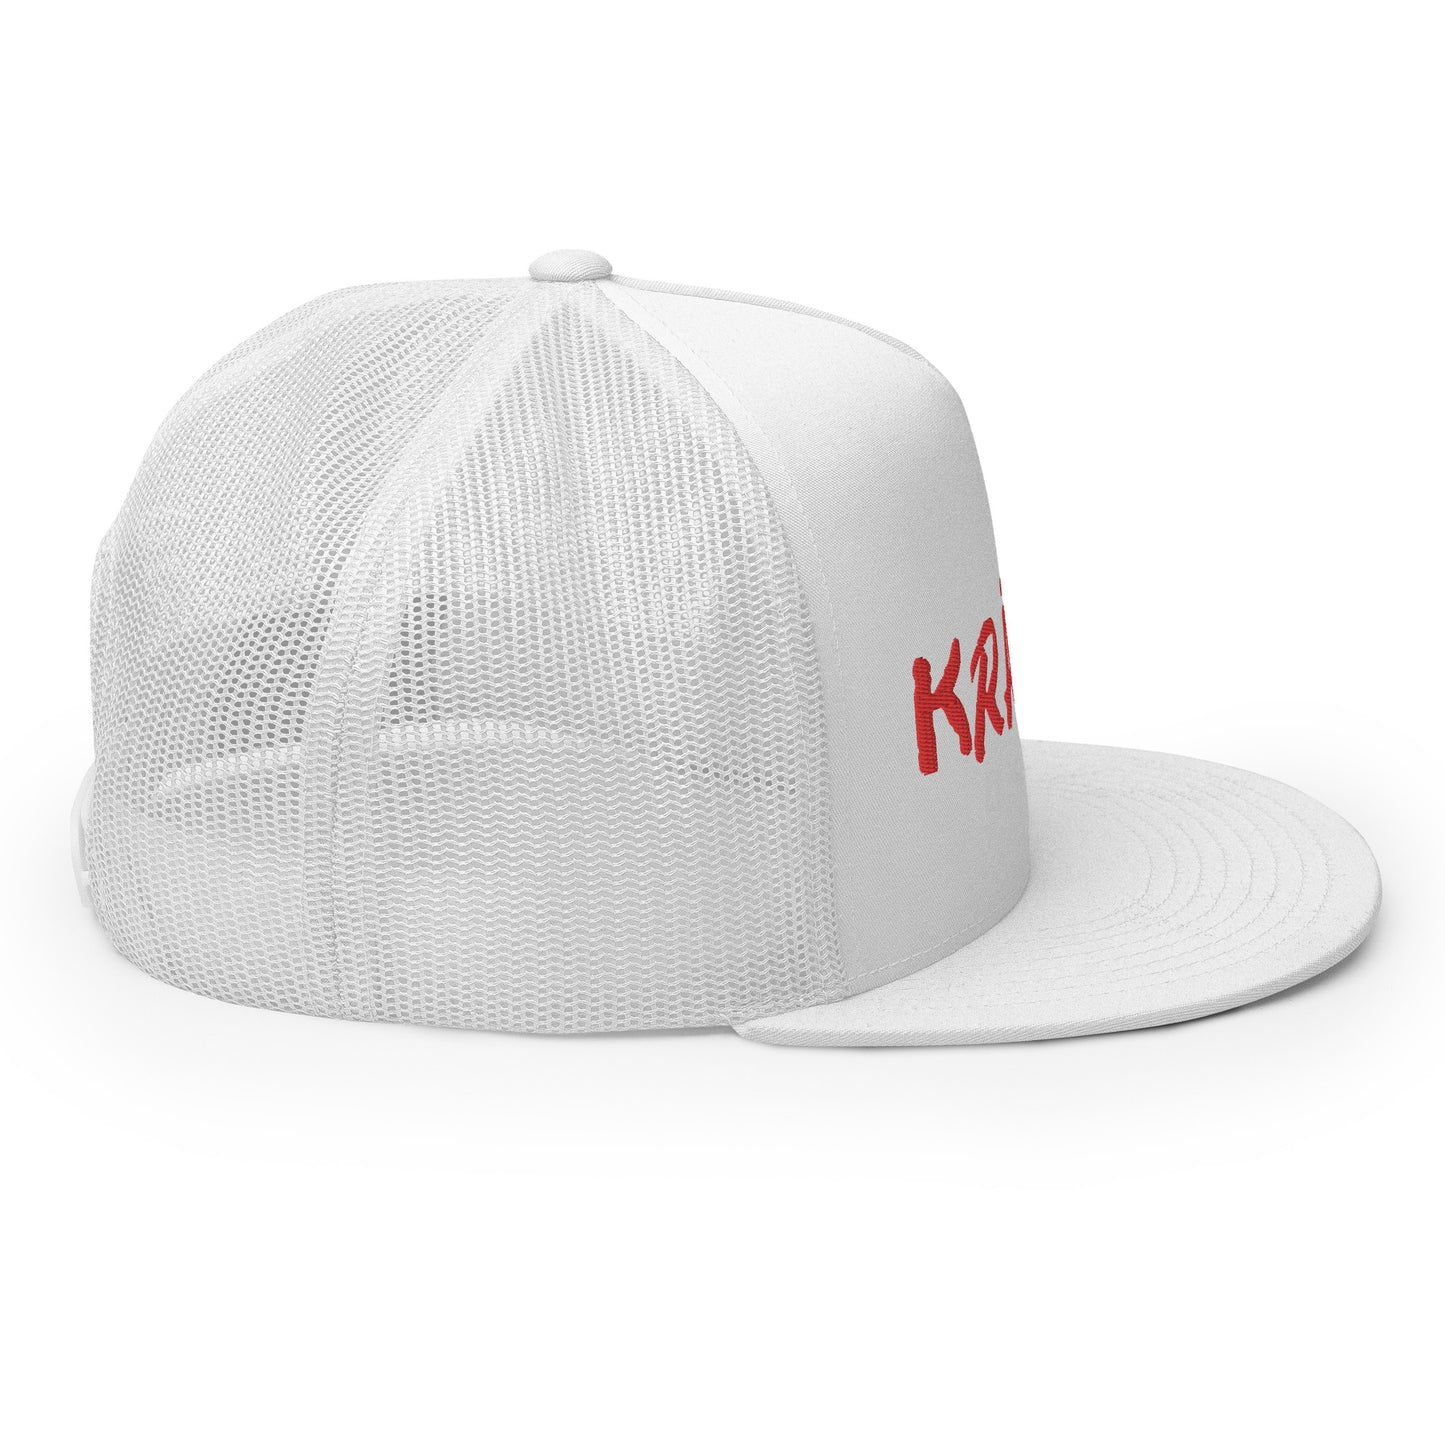 Kranik Brand Hat / Trucker Cap / OG Dare Logo / White / Red